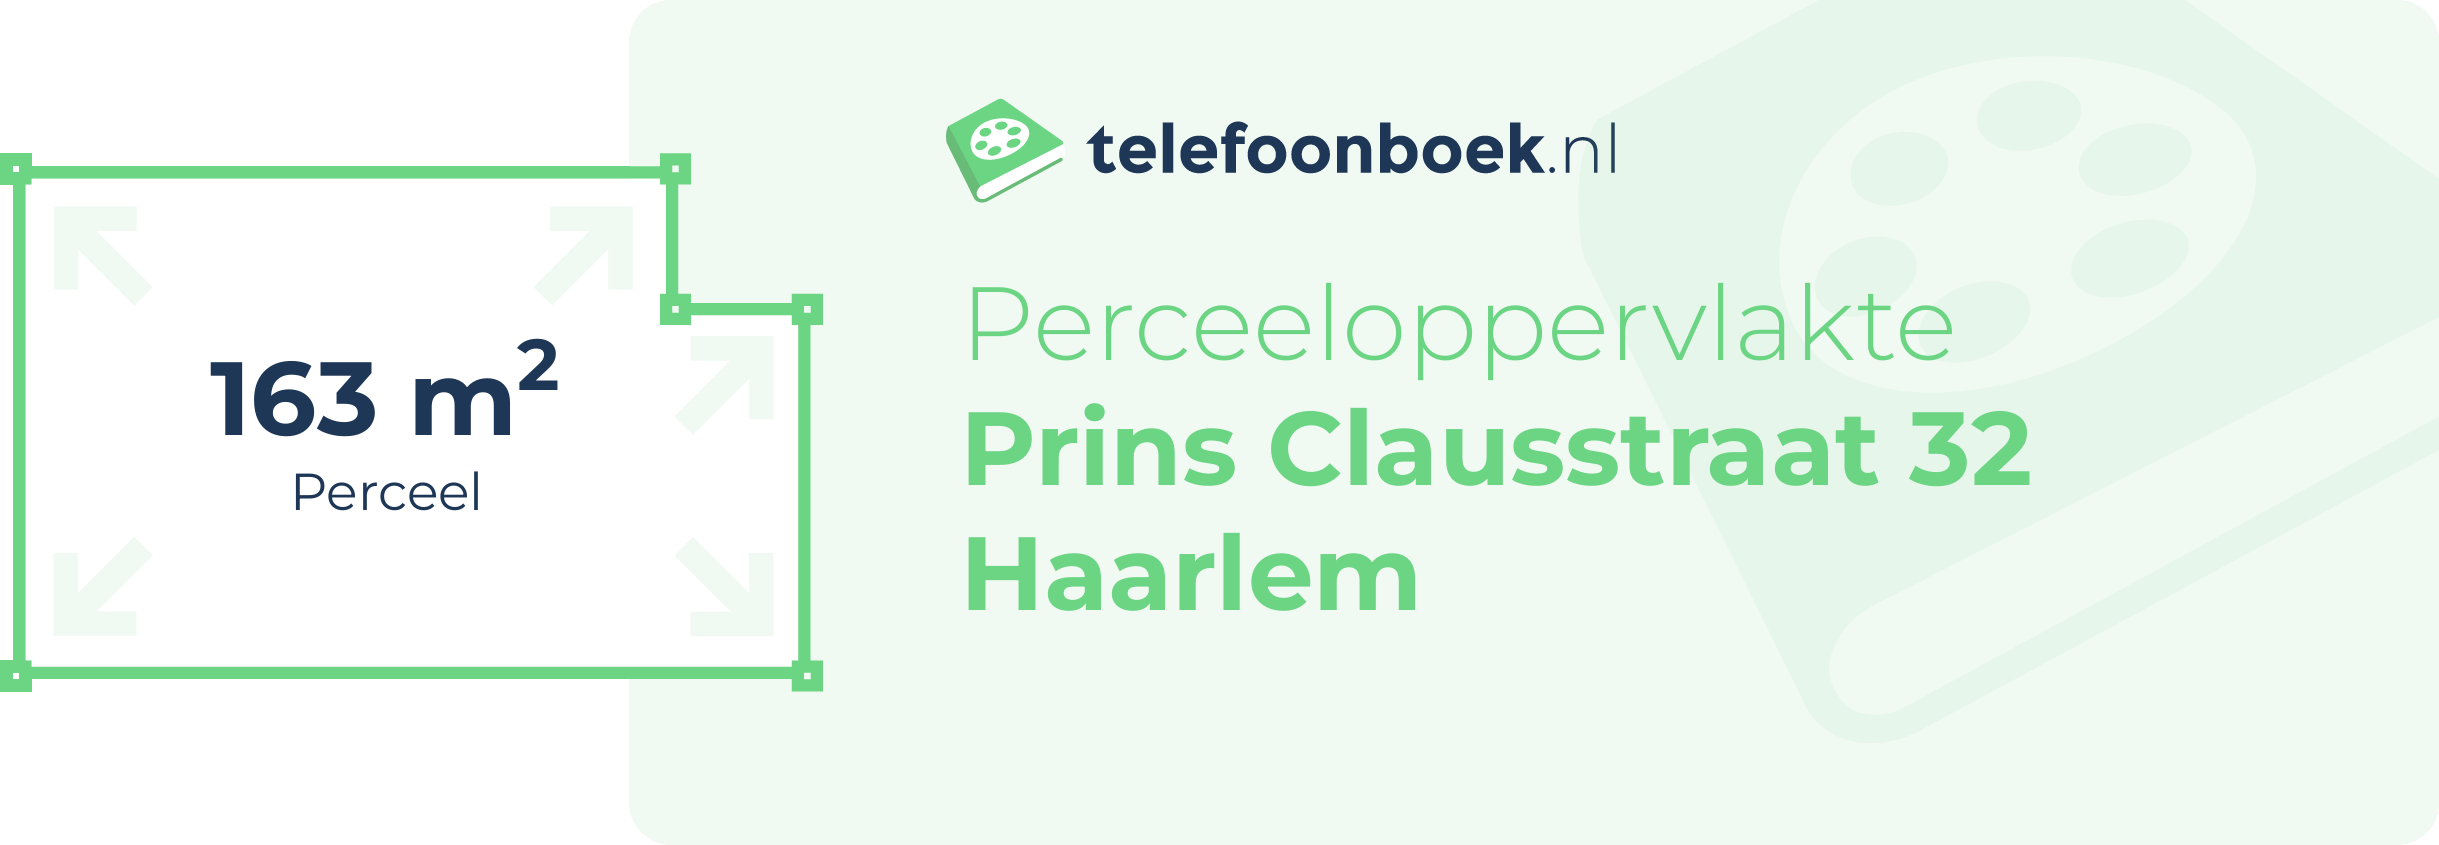 Perceeloppervlakte Prins Clausstraat 32 Haarlem